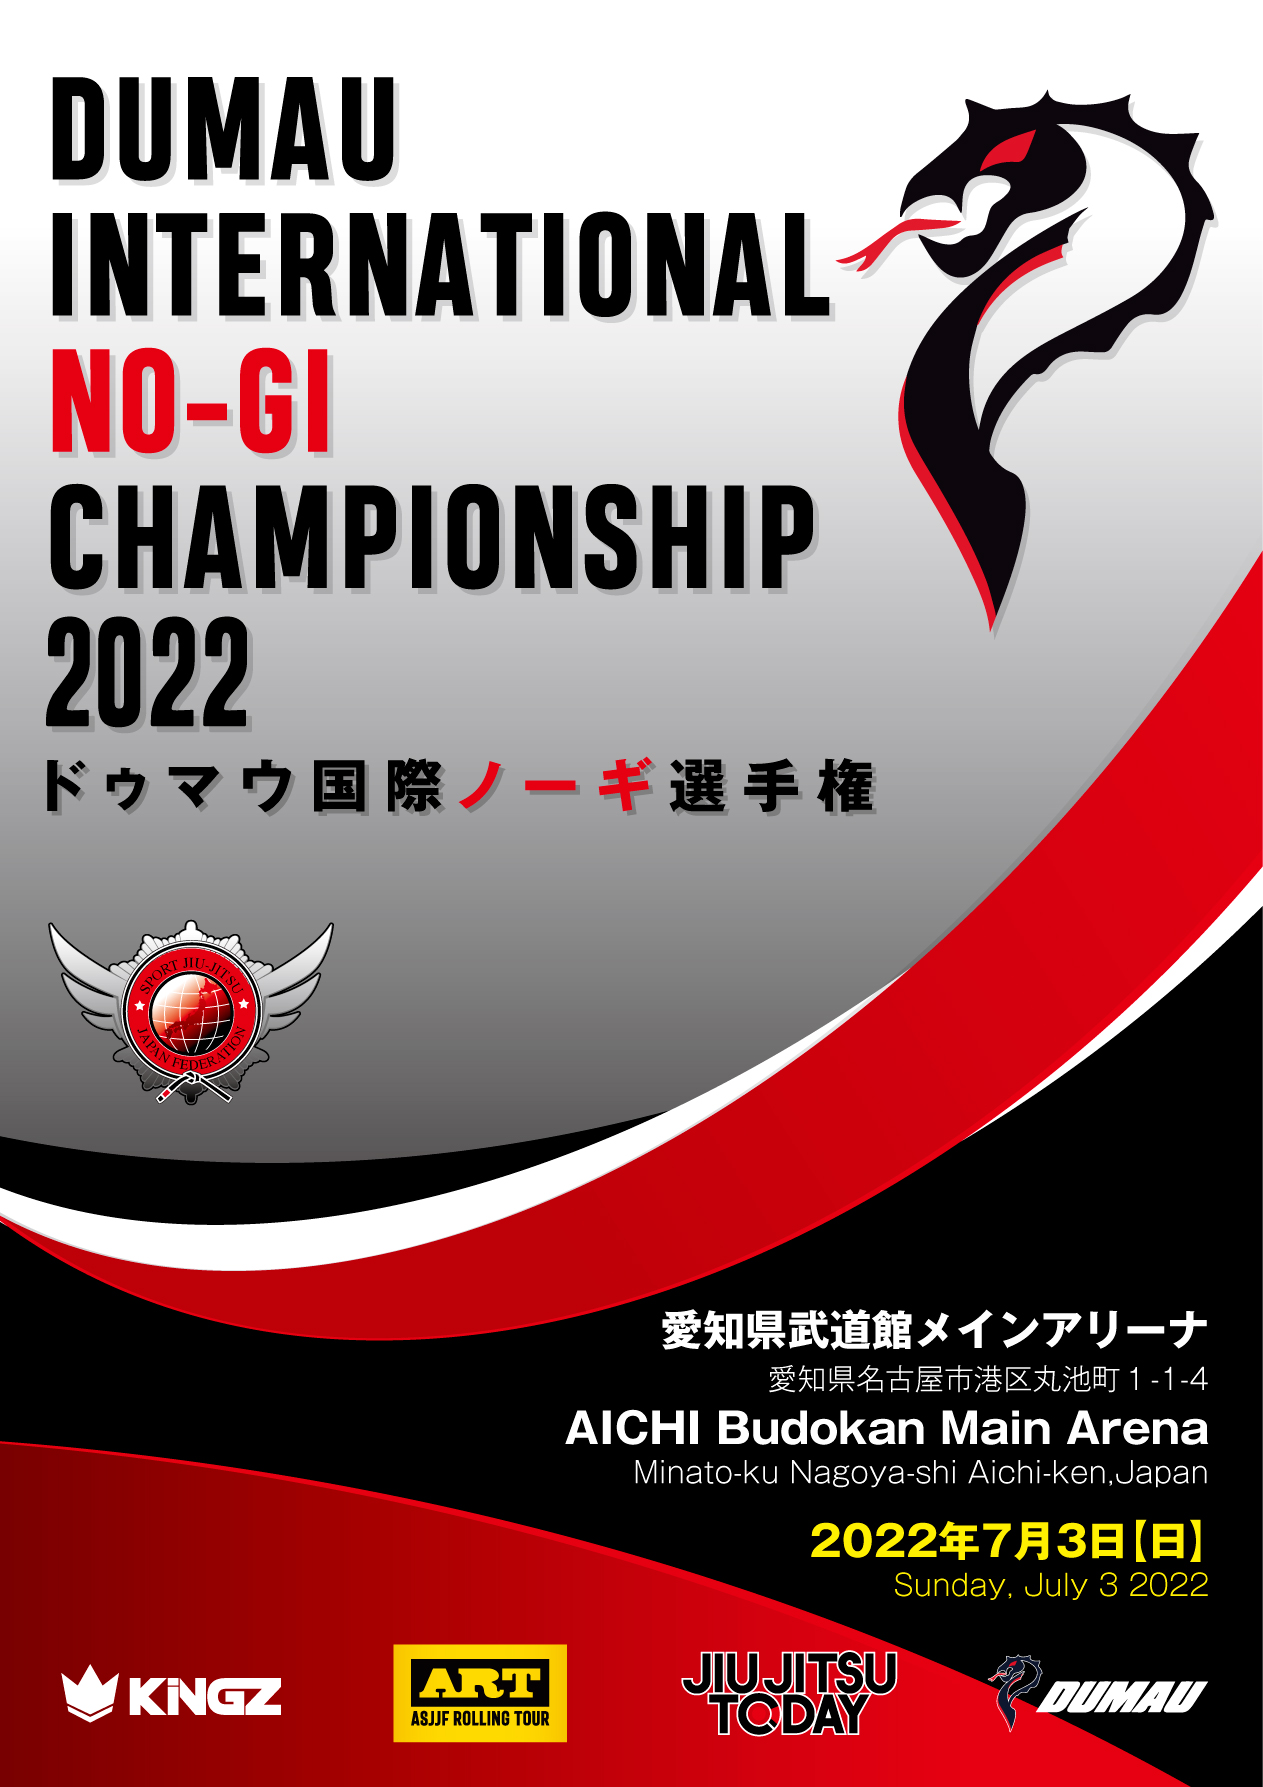 dumau international no-gi championship 2022